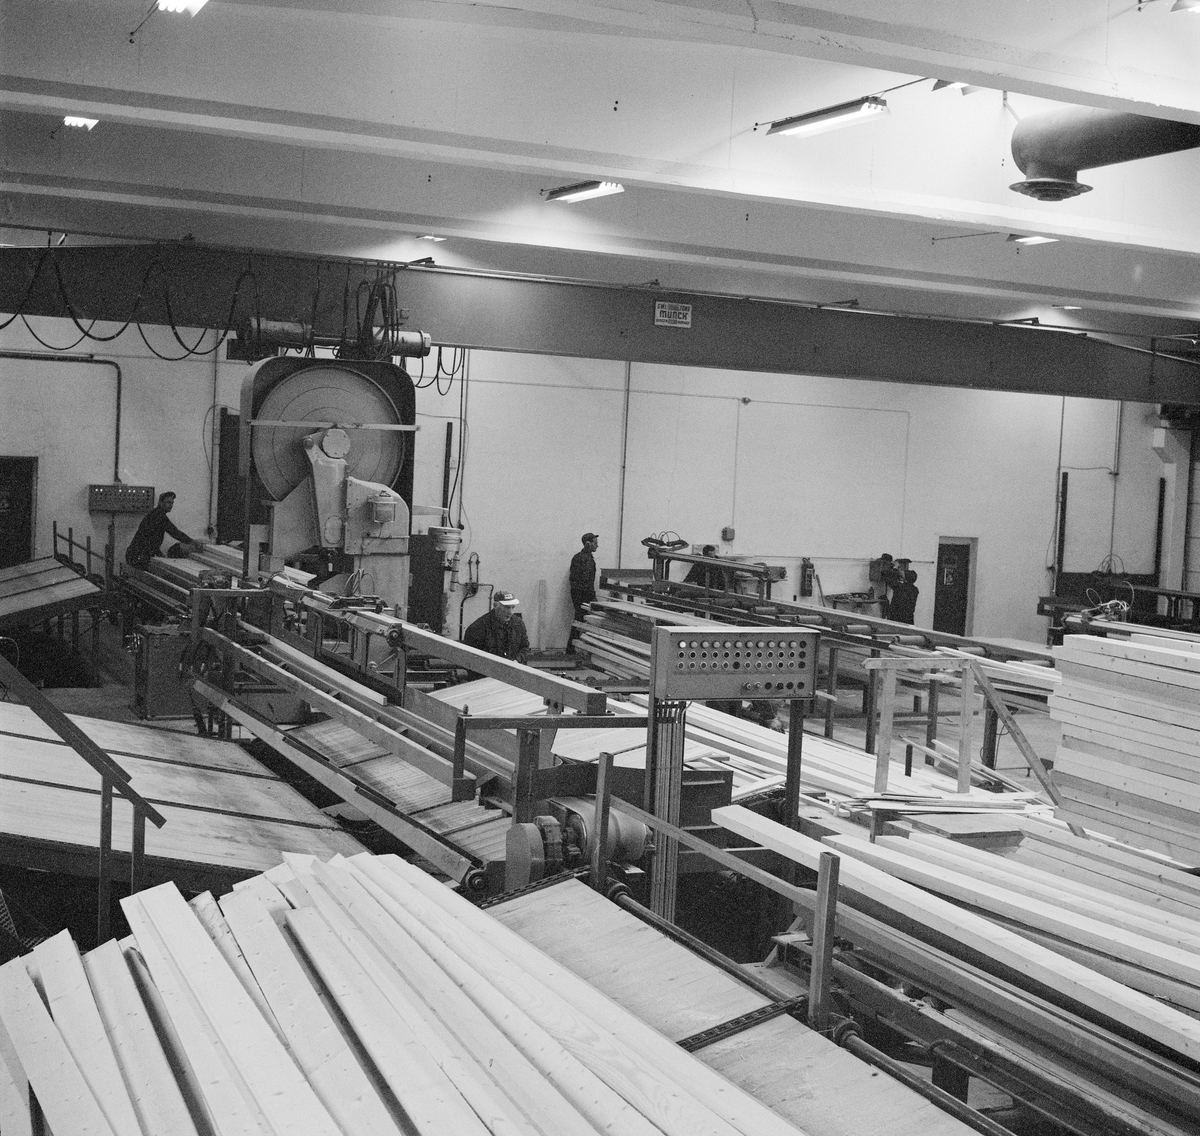 Industrilokale, trelastproduksjon i Trysil, Hedmark. Det er oppgitt at bildet er fra Trysil-Tre, og at det viser industrilokalene etter 2. byggetrinn i november 1970.